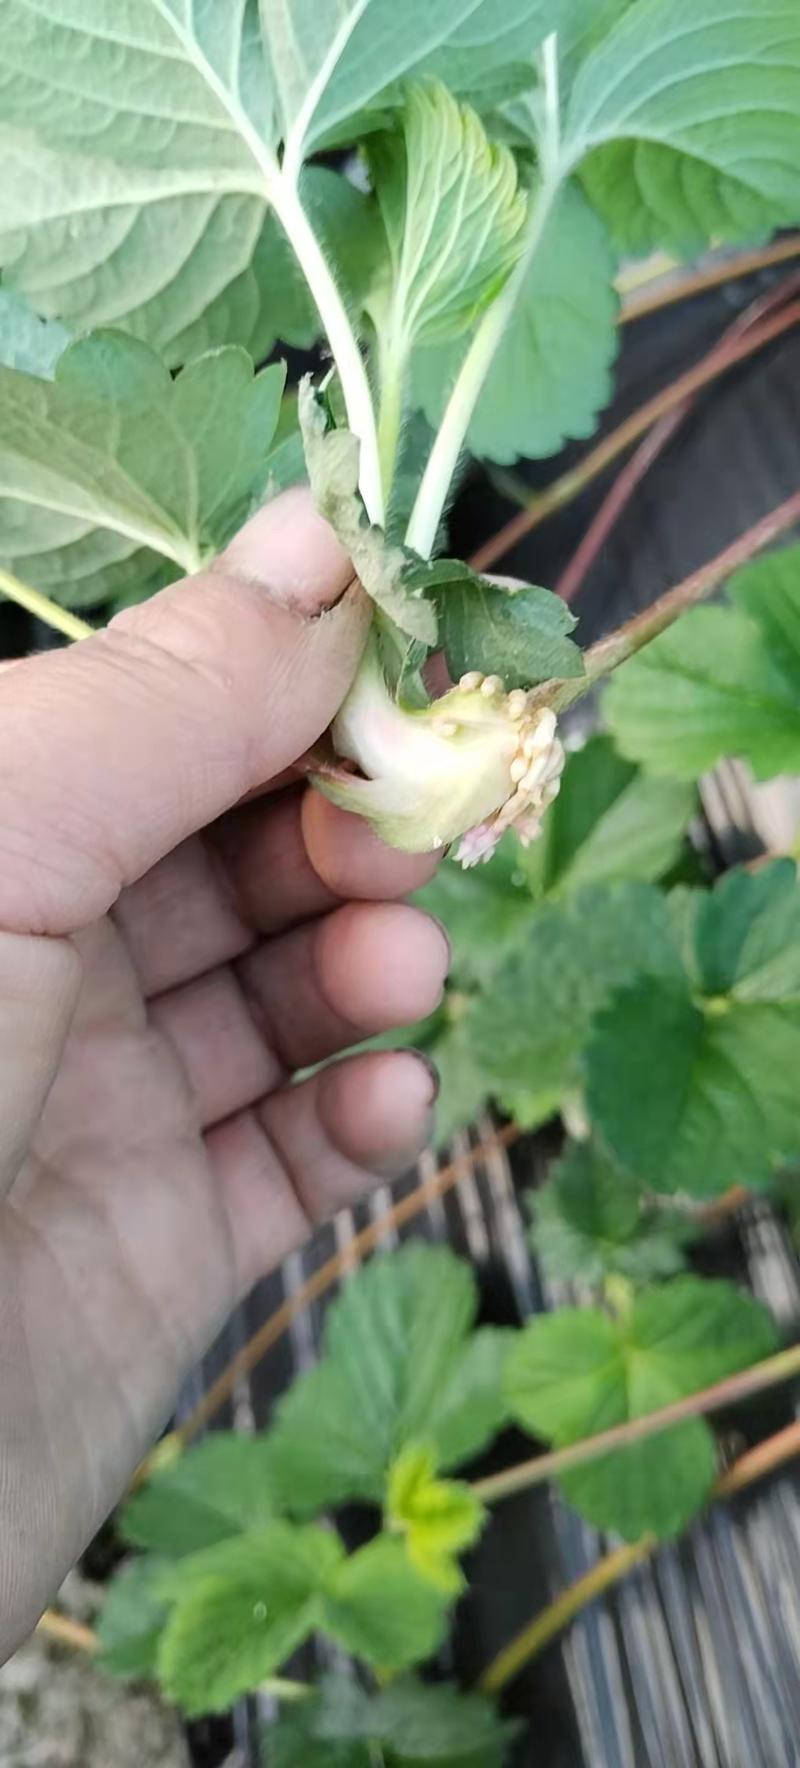 红颜草莓品种匍匐茎种苗出售。有需要的联系我。